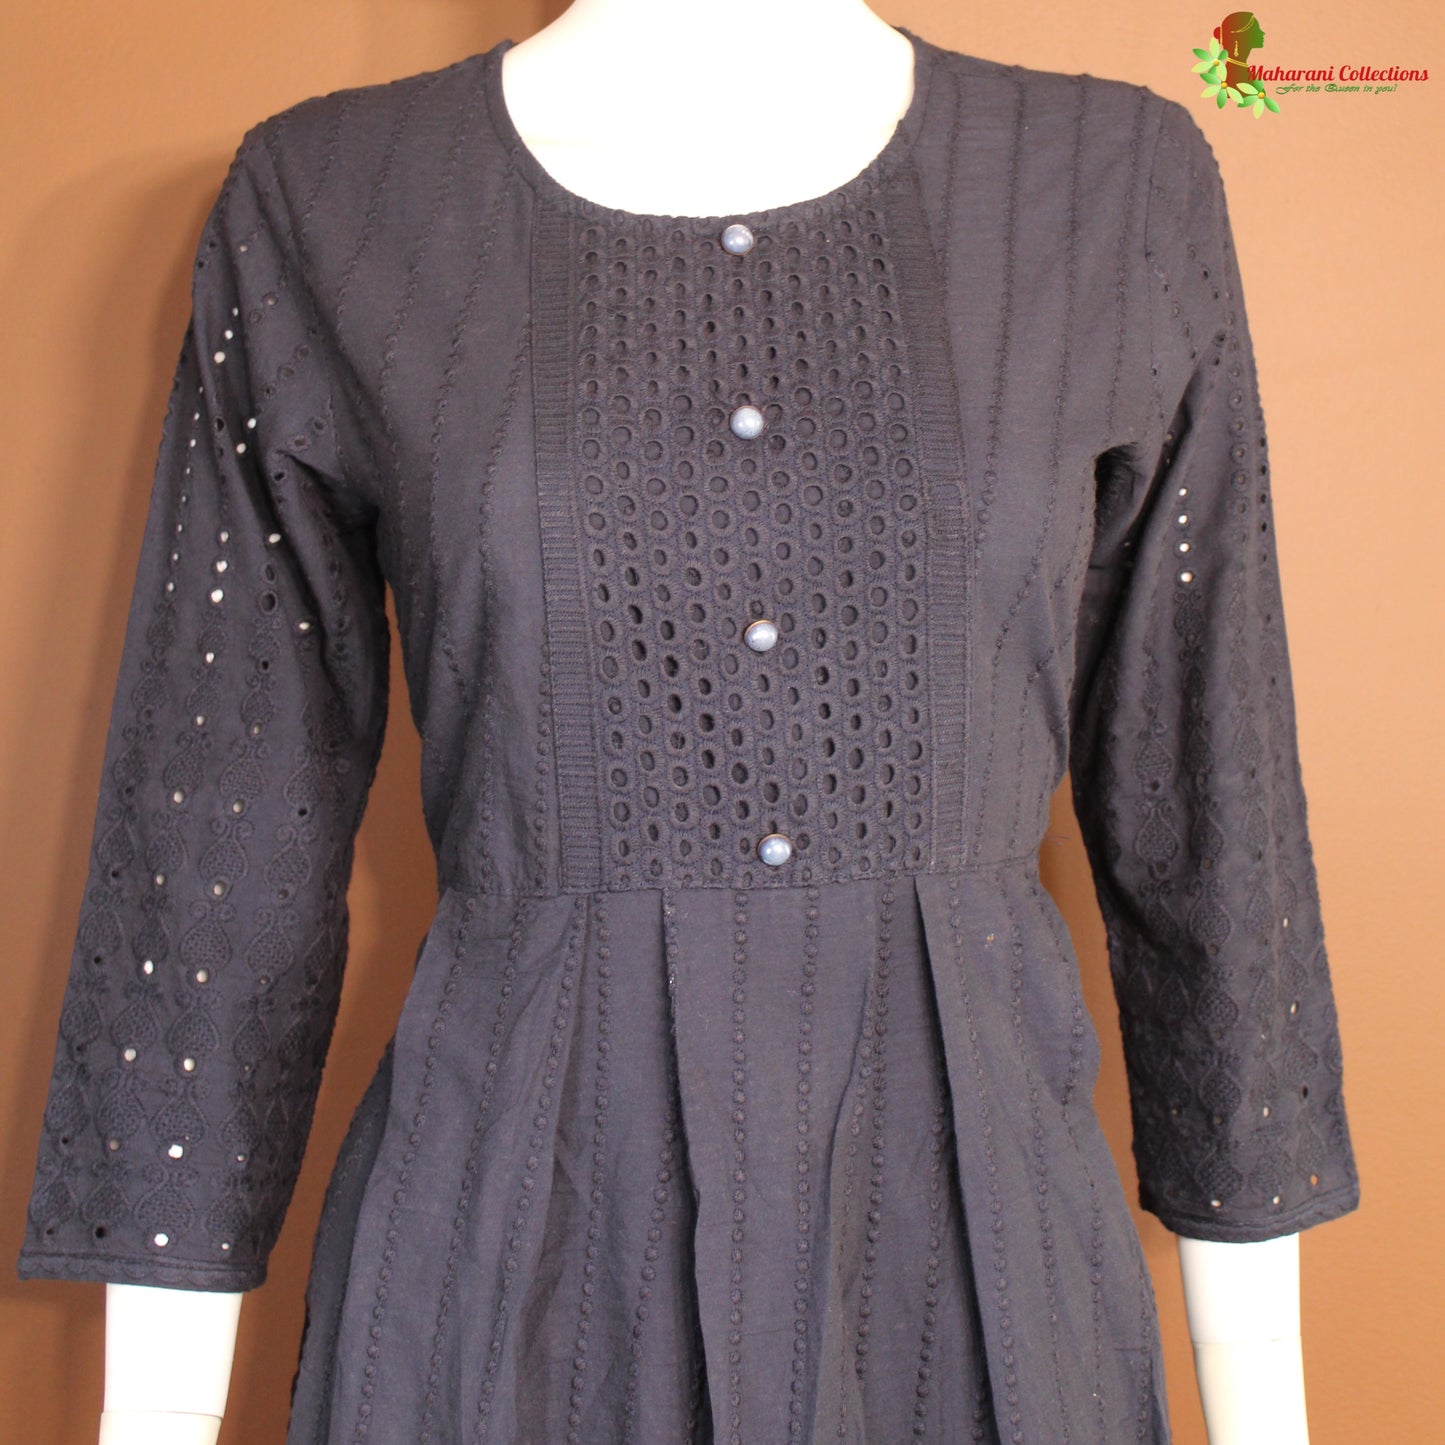 Maharani's Long Dress - Pure Cotton - Black (M)